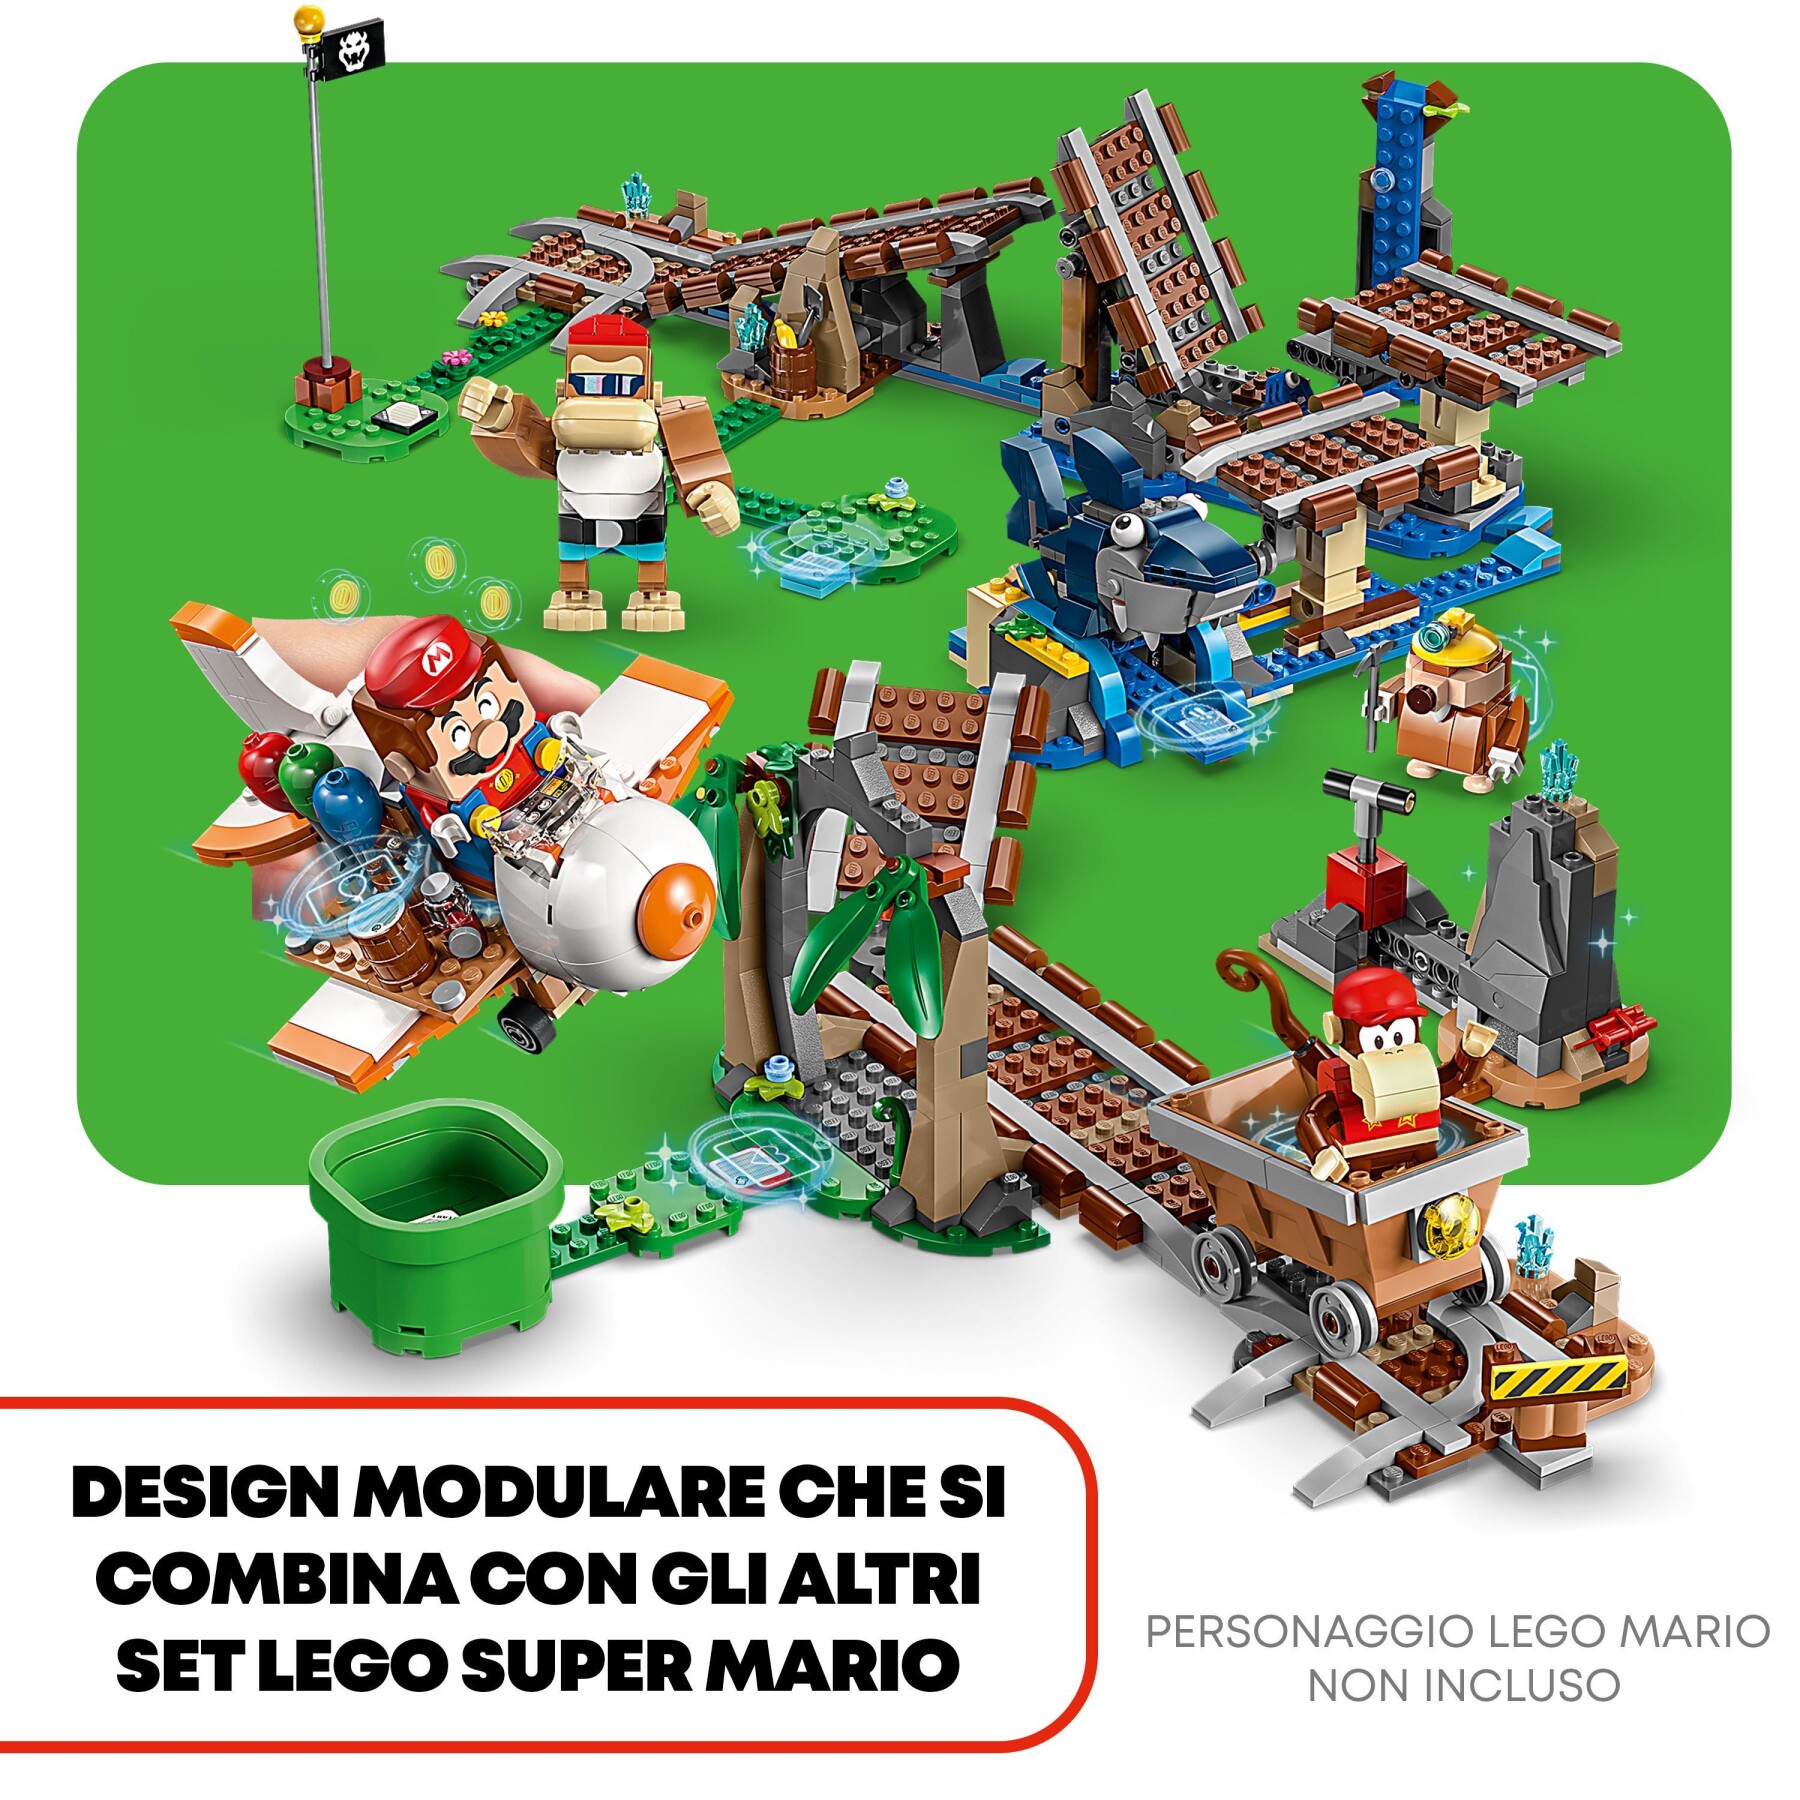 Lego super mario 71425 pack di espansione corsa nella miniera di diddy kong, livello con percorso, aereo giocattolo e 4 personaggi - LEGO® Super Mario™